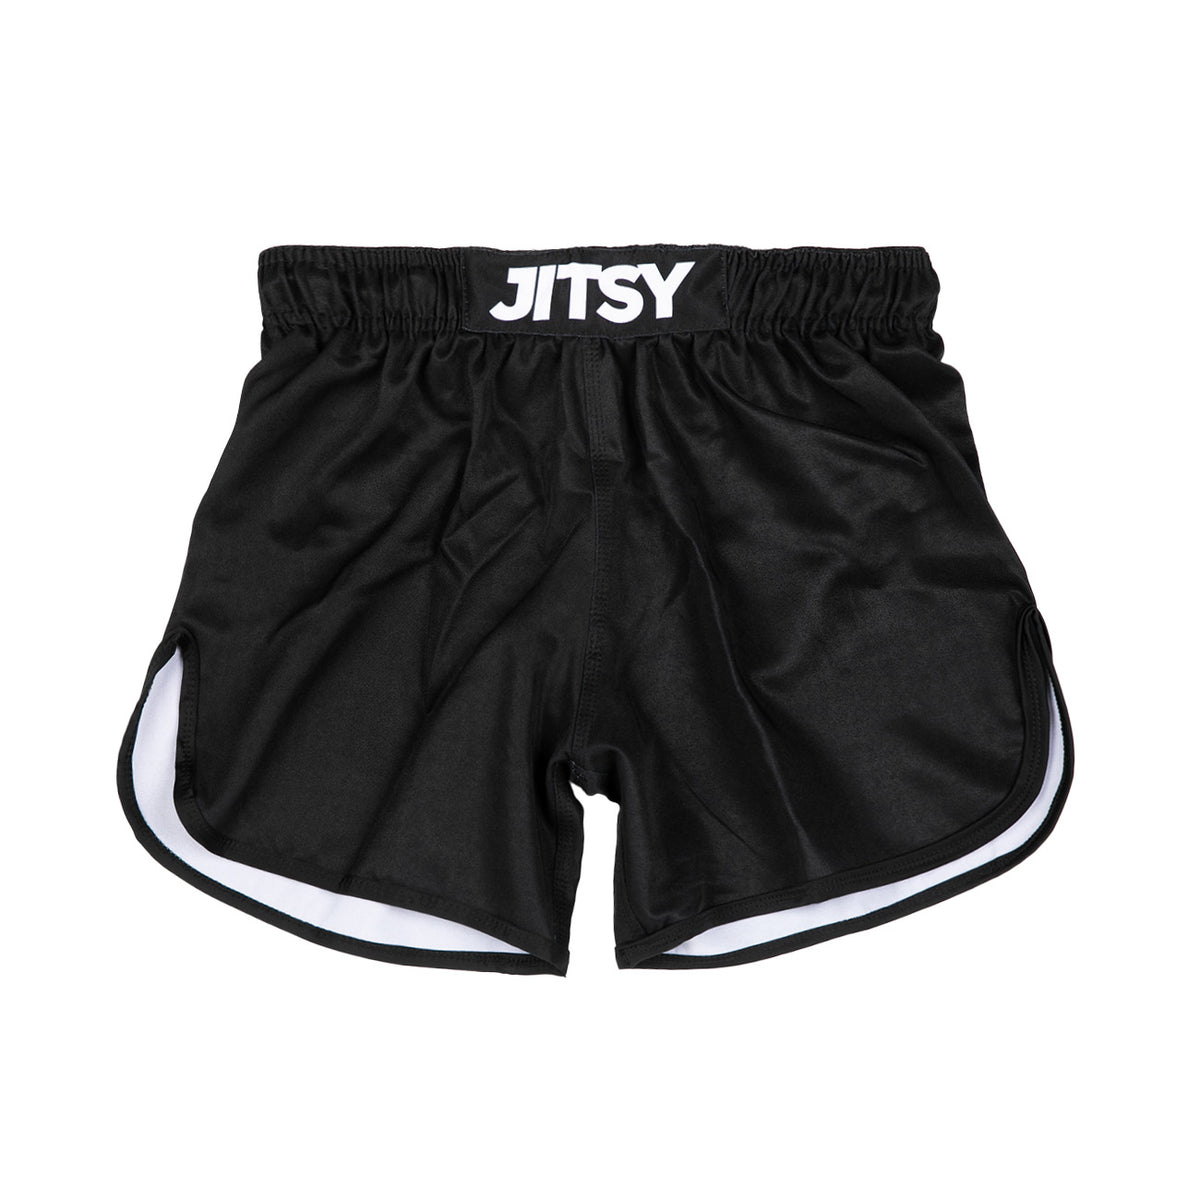 Jitsy Black Hybrid Shorts - Men